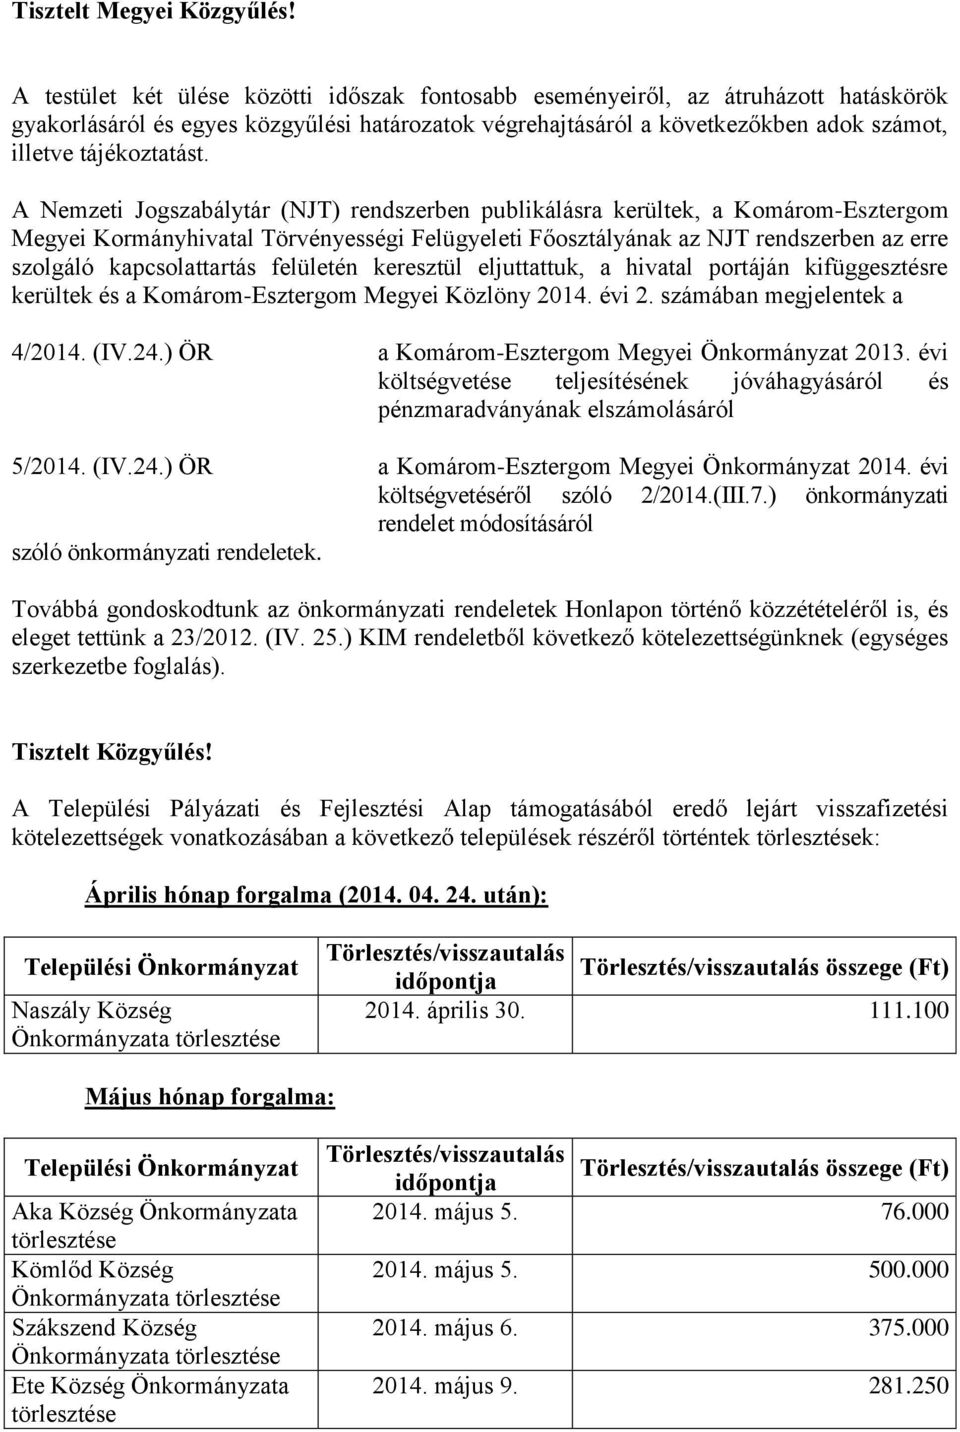 A Nemzeti Jogszabálytár (NJT) rendszerben publikálásra kerültek, a Komárom-Esztergom Megyei Kormányhivatal Törvényességi Felügyeleti Főosztályának az NJT rendszerben az erre szolgáló kapcsolattartás